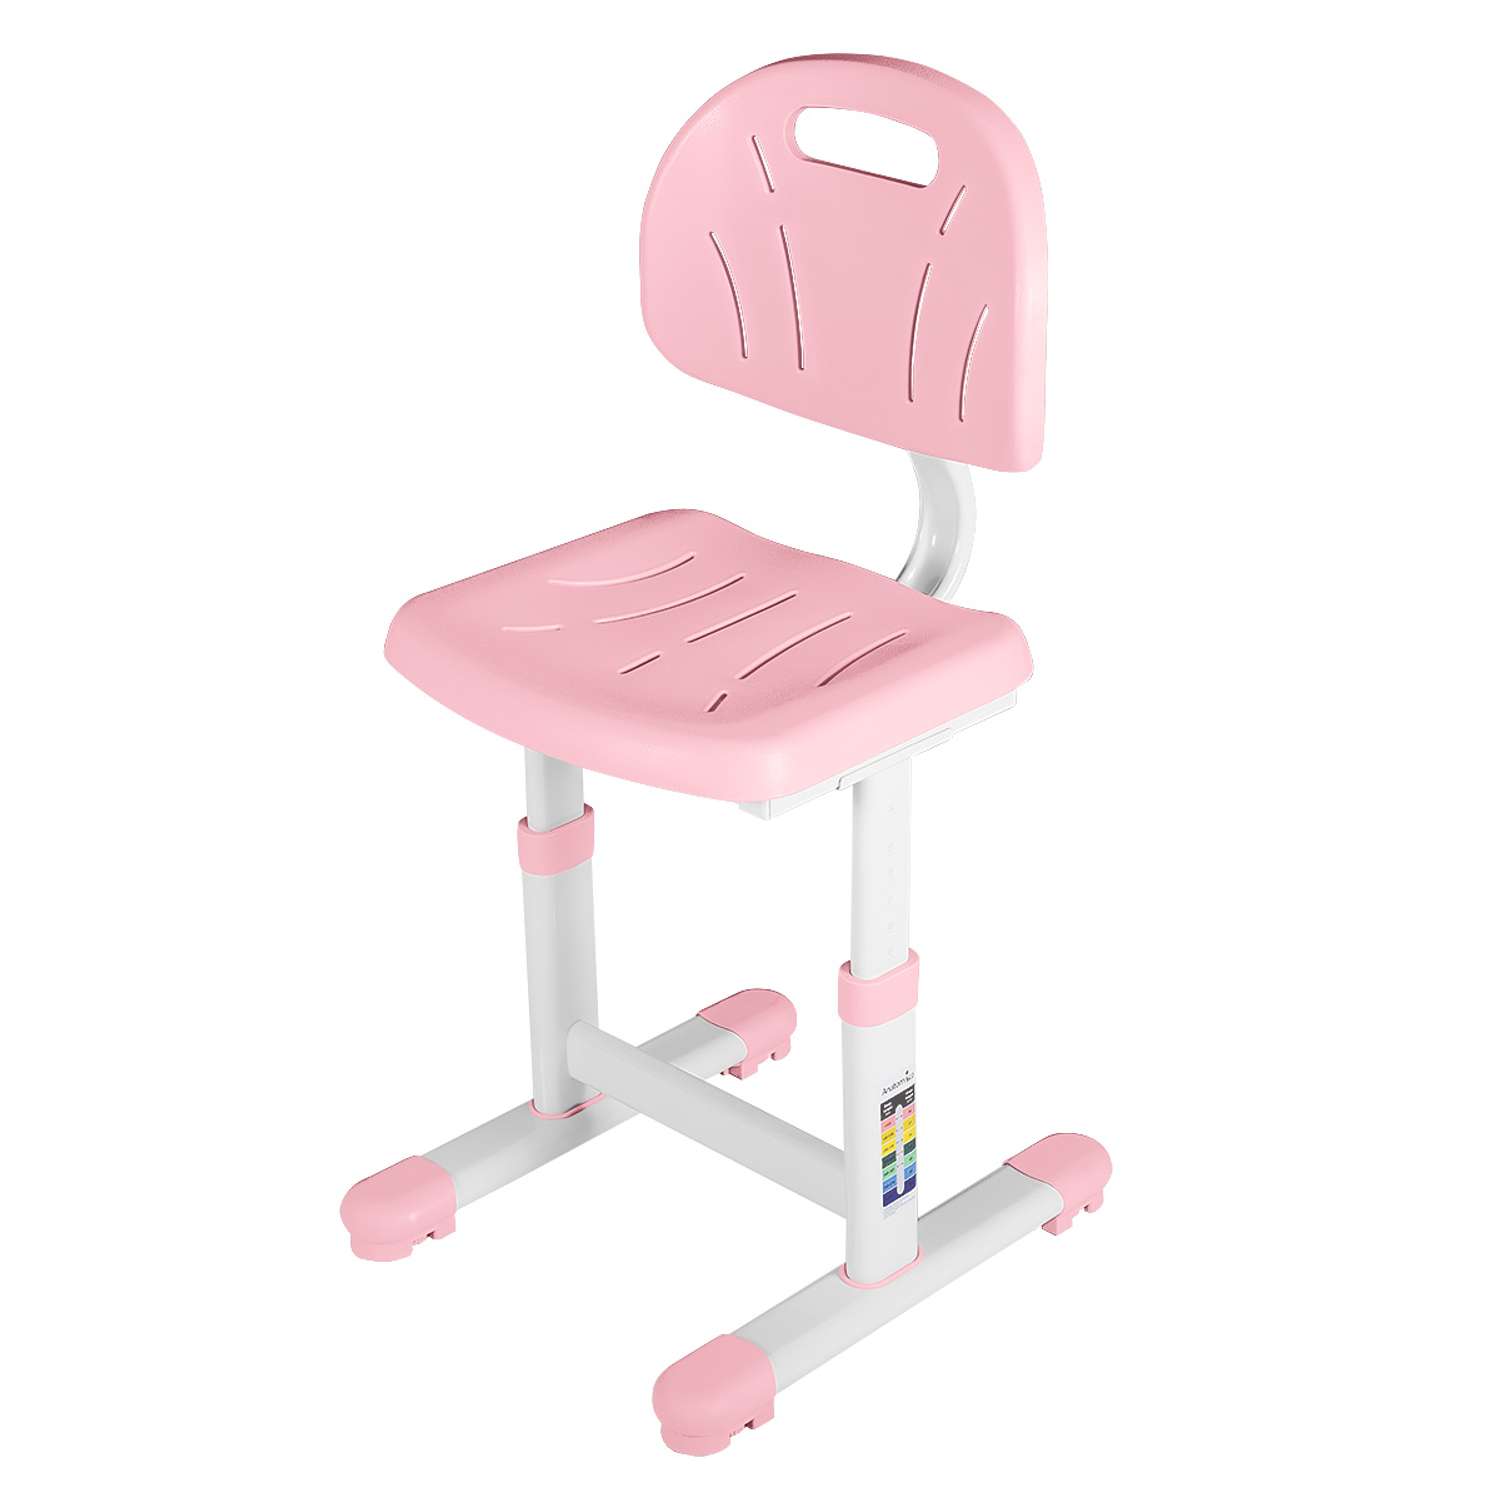 Растущий детский стул Anatomica Lux-02 светло-розовый - фото 1